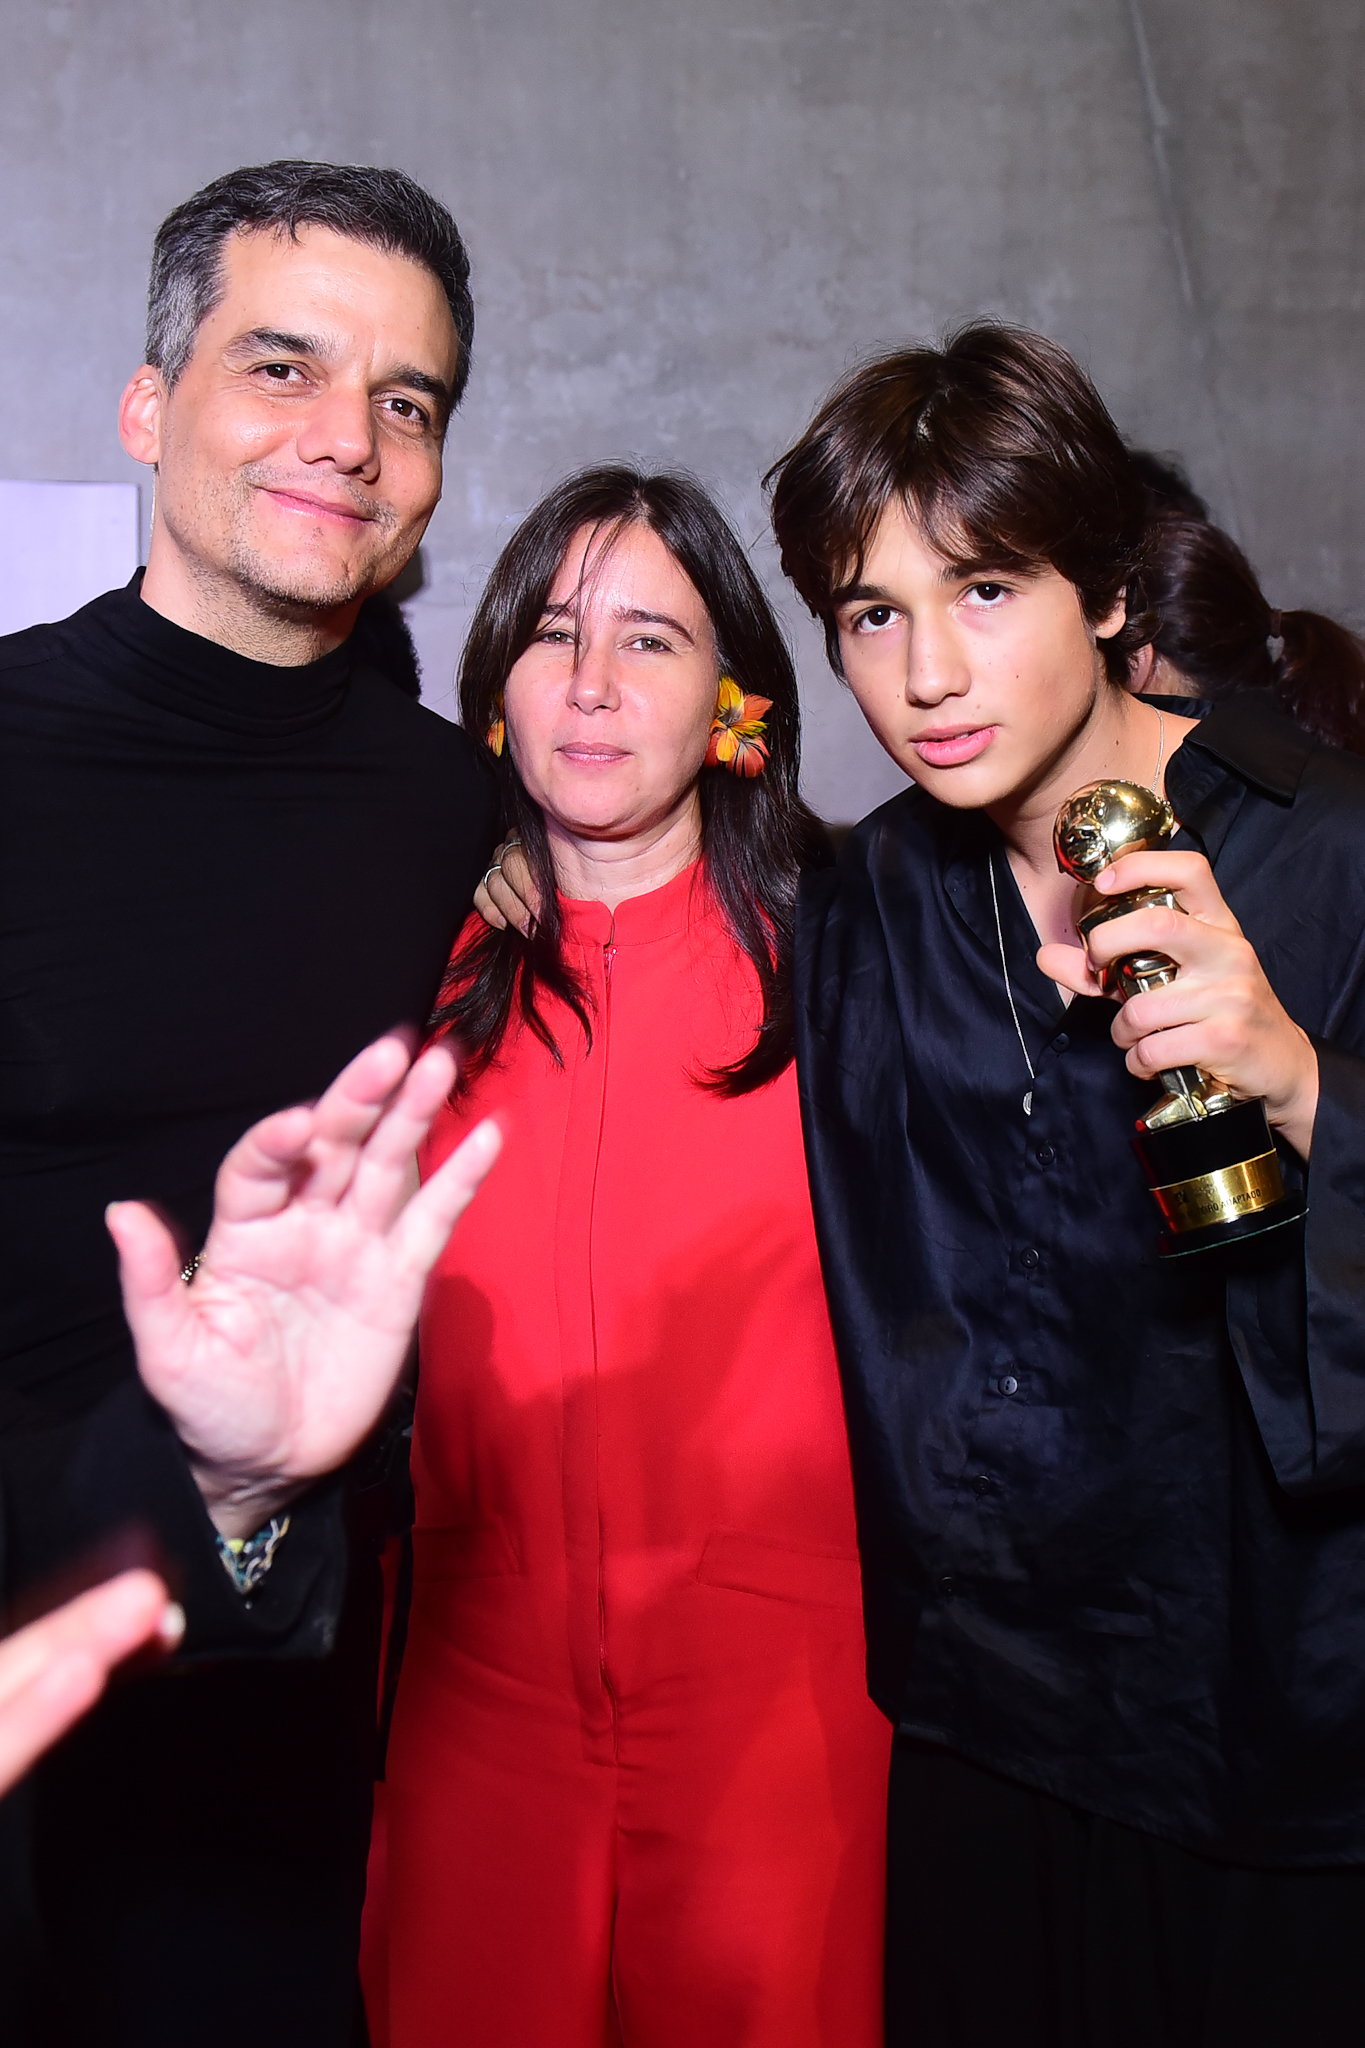 Foto de Wagner Moura, da esposa Sandra Delgado e do filho mais velho deles, Bem. Pai e filho seguram prêmios em um tapete vermelho